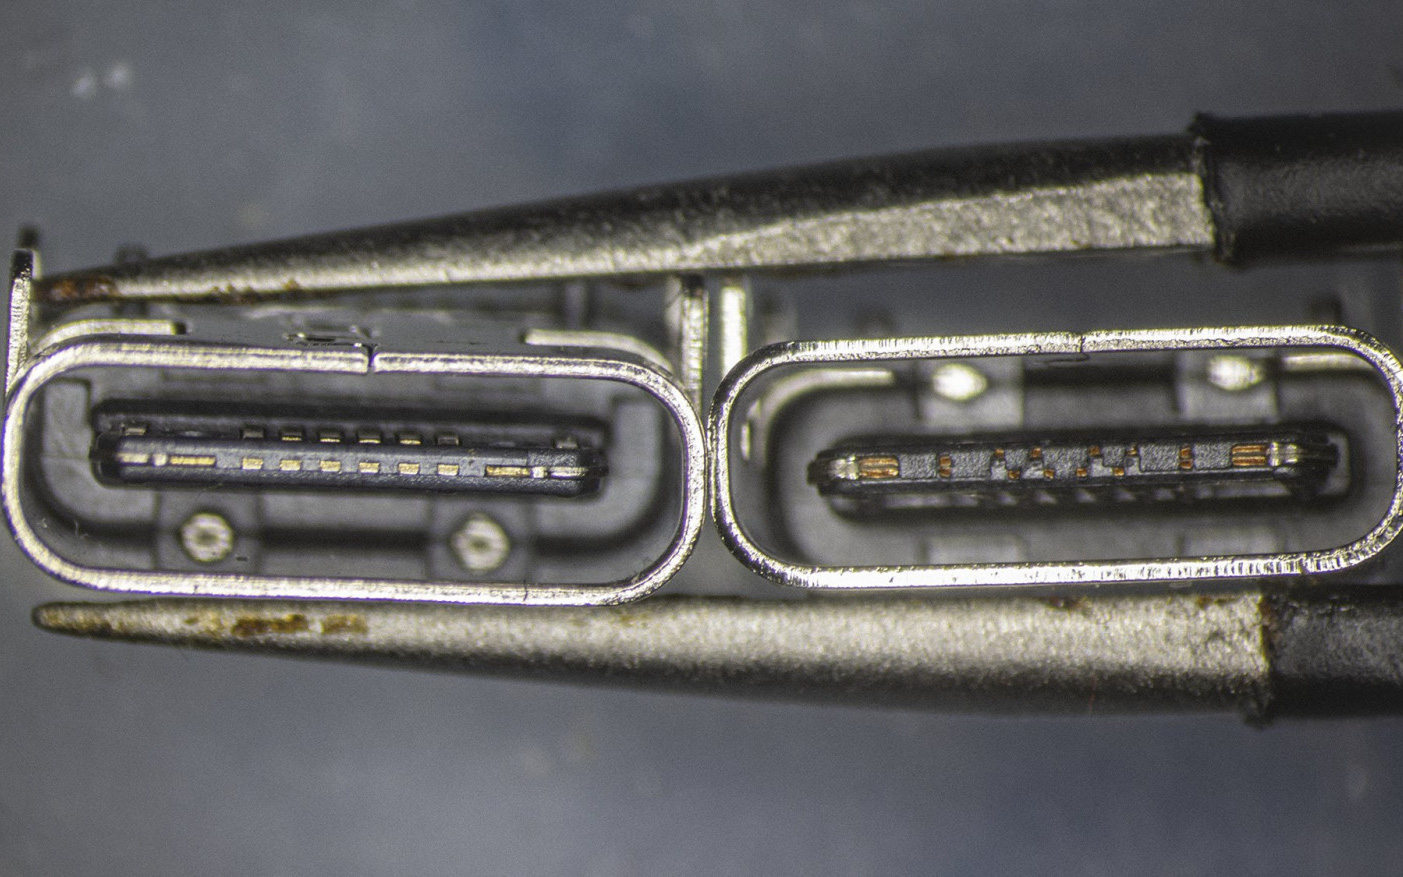 So sánh đầu nối USB-C loại 1 nghìn đồng và 5 nghìn đồng dưới kính hiển vi: đắt hơn gấp 5 nhưng chất lượng có hơn tương xứng?